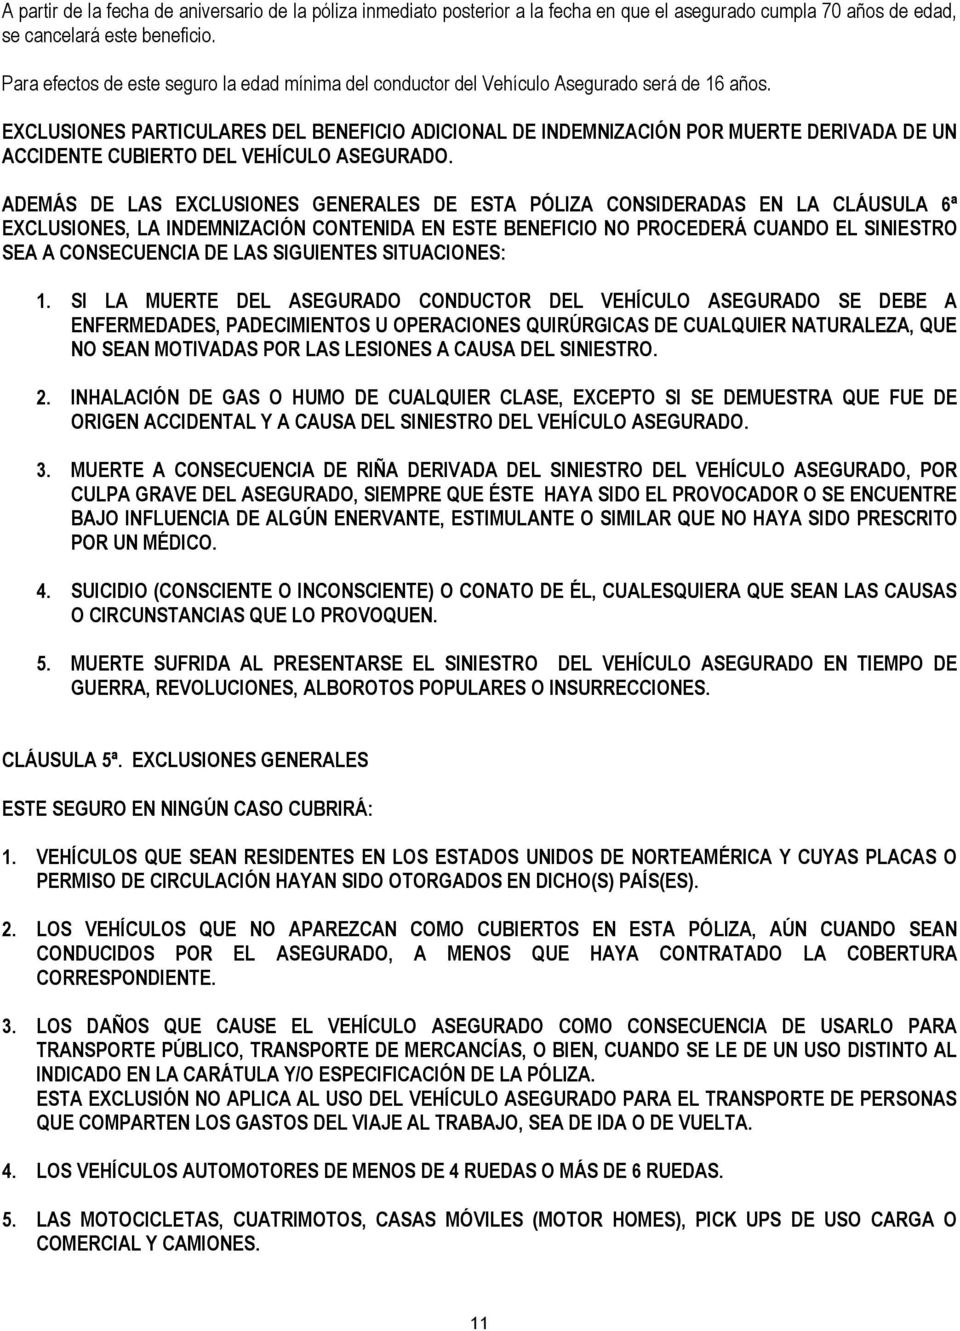 EXCLUSIONES PARTICULARES DEL BENEFICIO ADICIONAL DE INDEMNIZACIÓN POR MUERTE DERIVADA DE UN ACCIDENTE CUBIERTO DEL VEHÍCULO ASEGURADO.